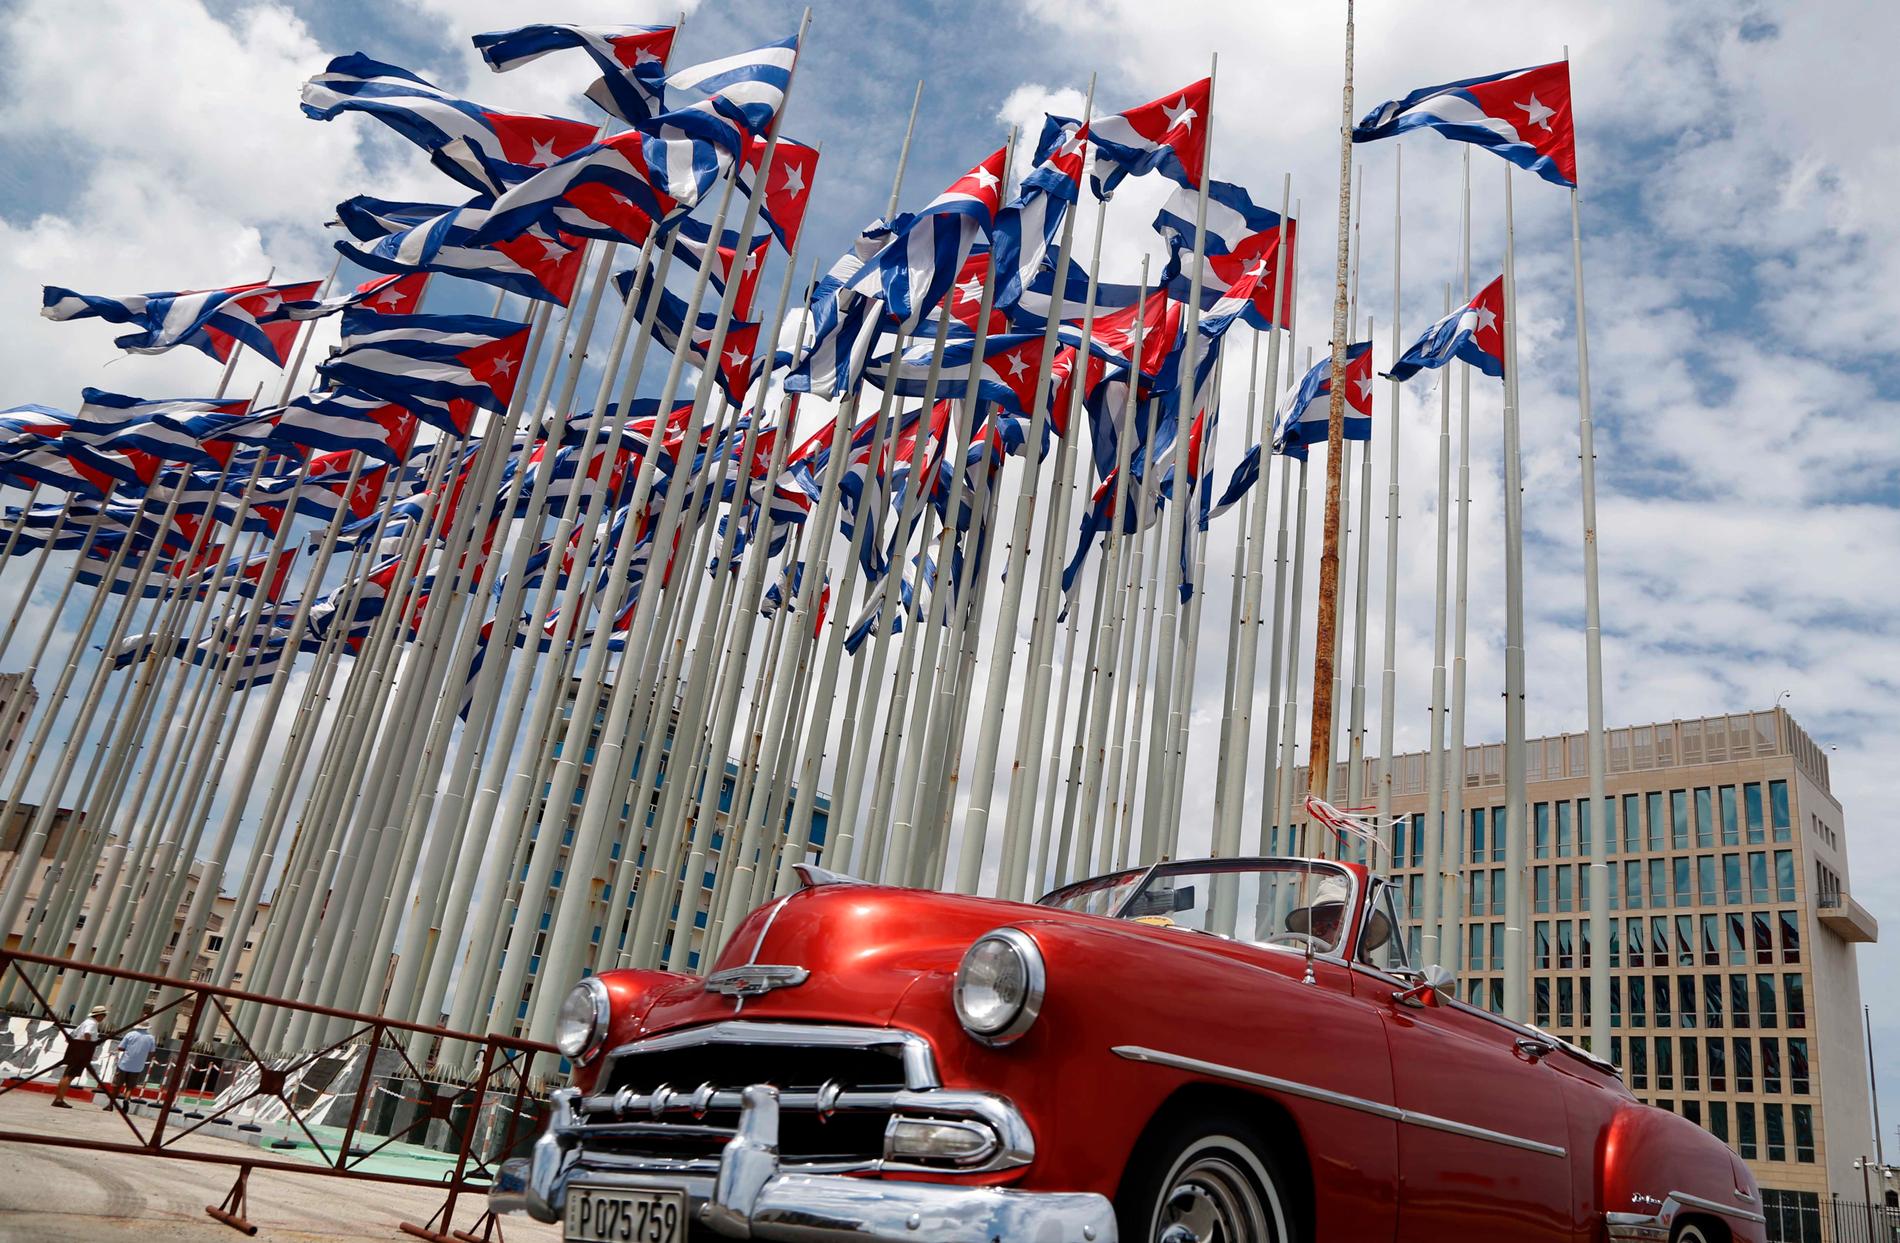 Även de klassiska amerikanarna i Havanna kan bli stillastående i oljebristen. Arkivbild.